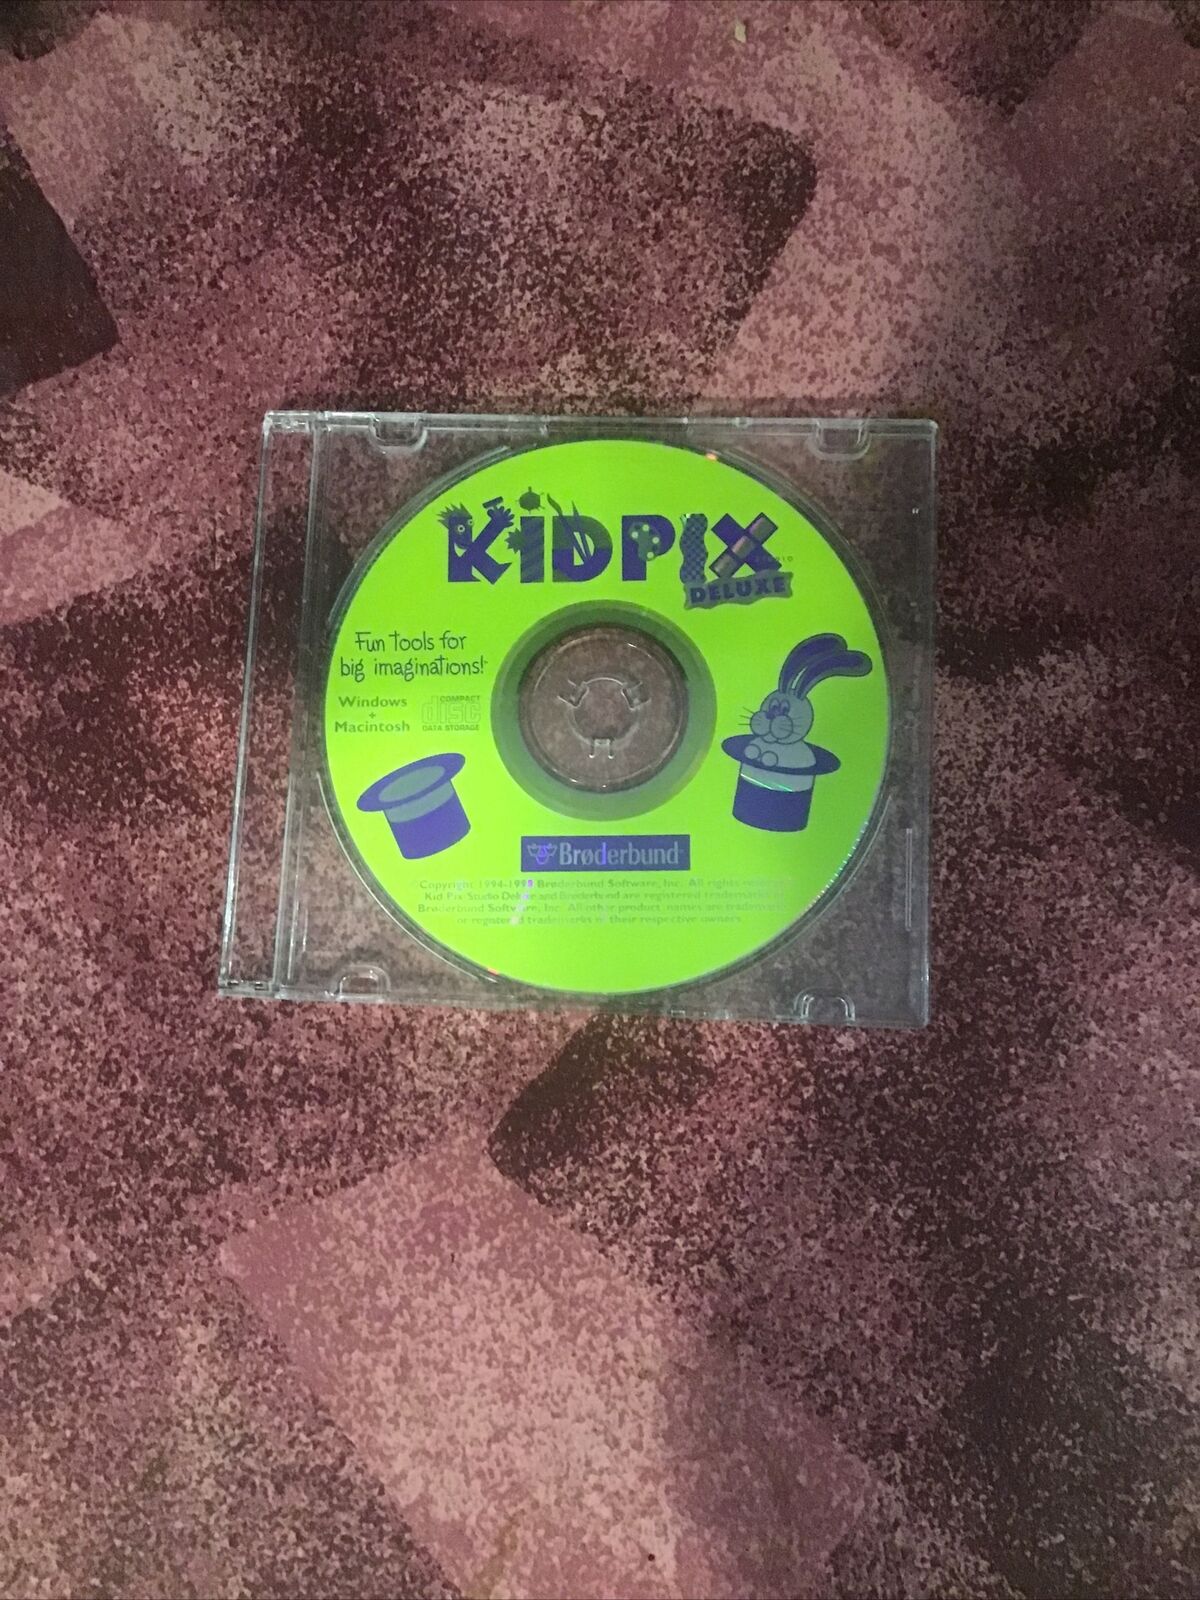 Kidpix Deluxe PC CD-ROM